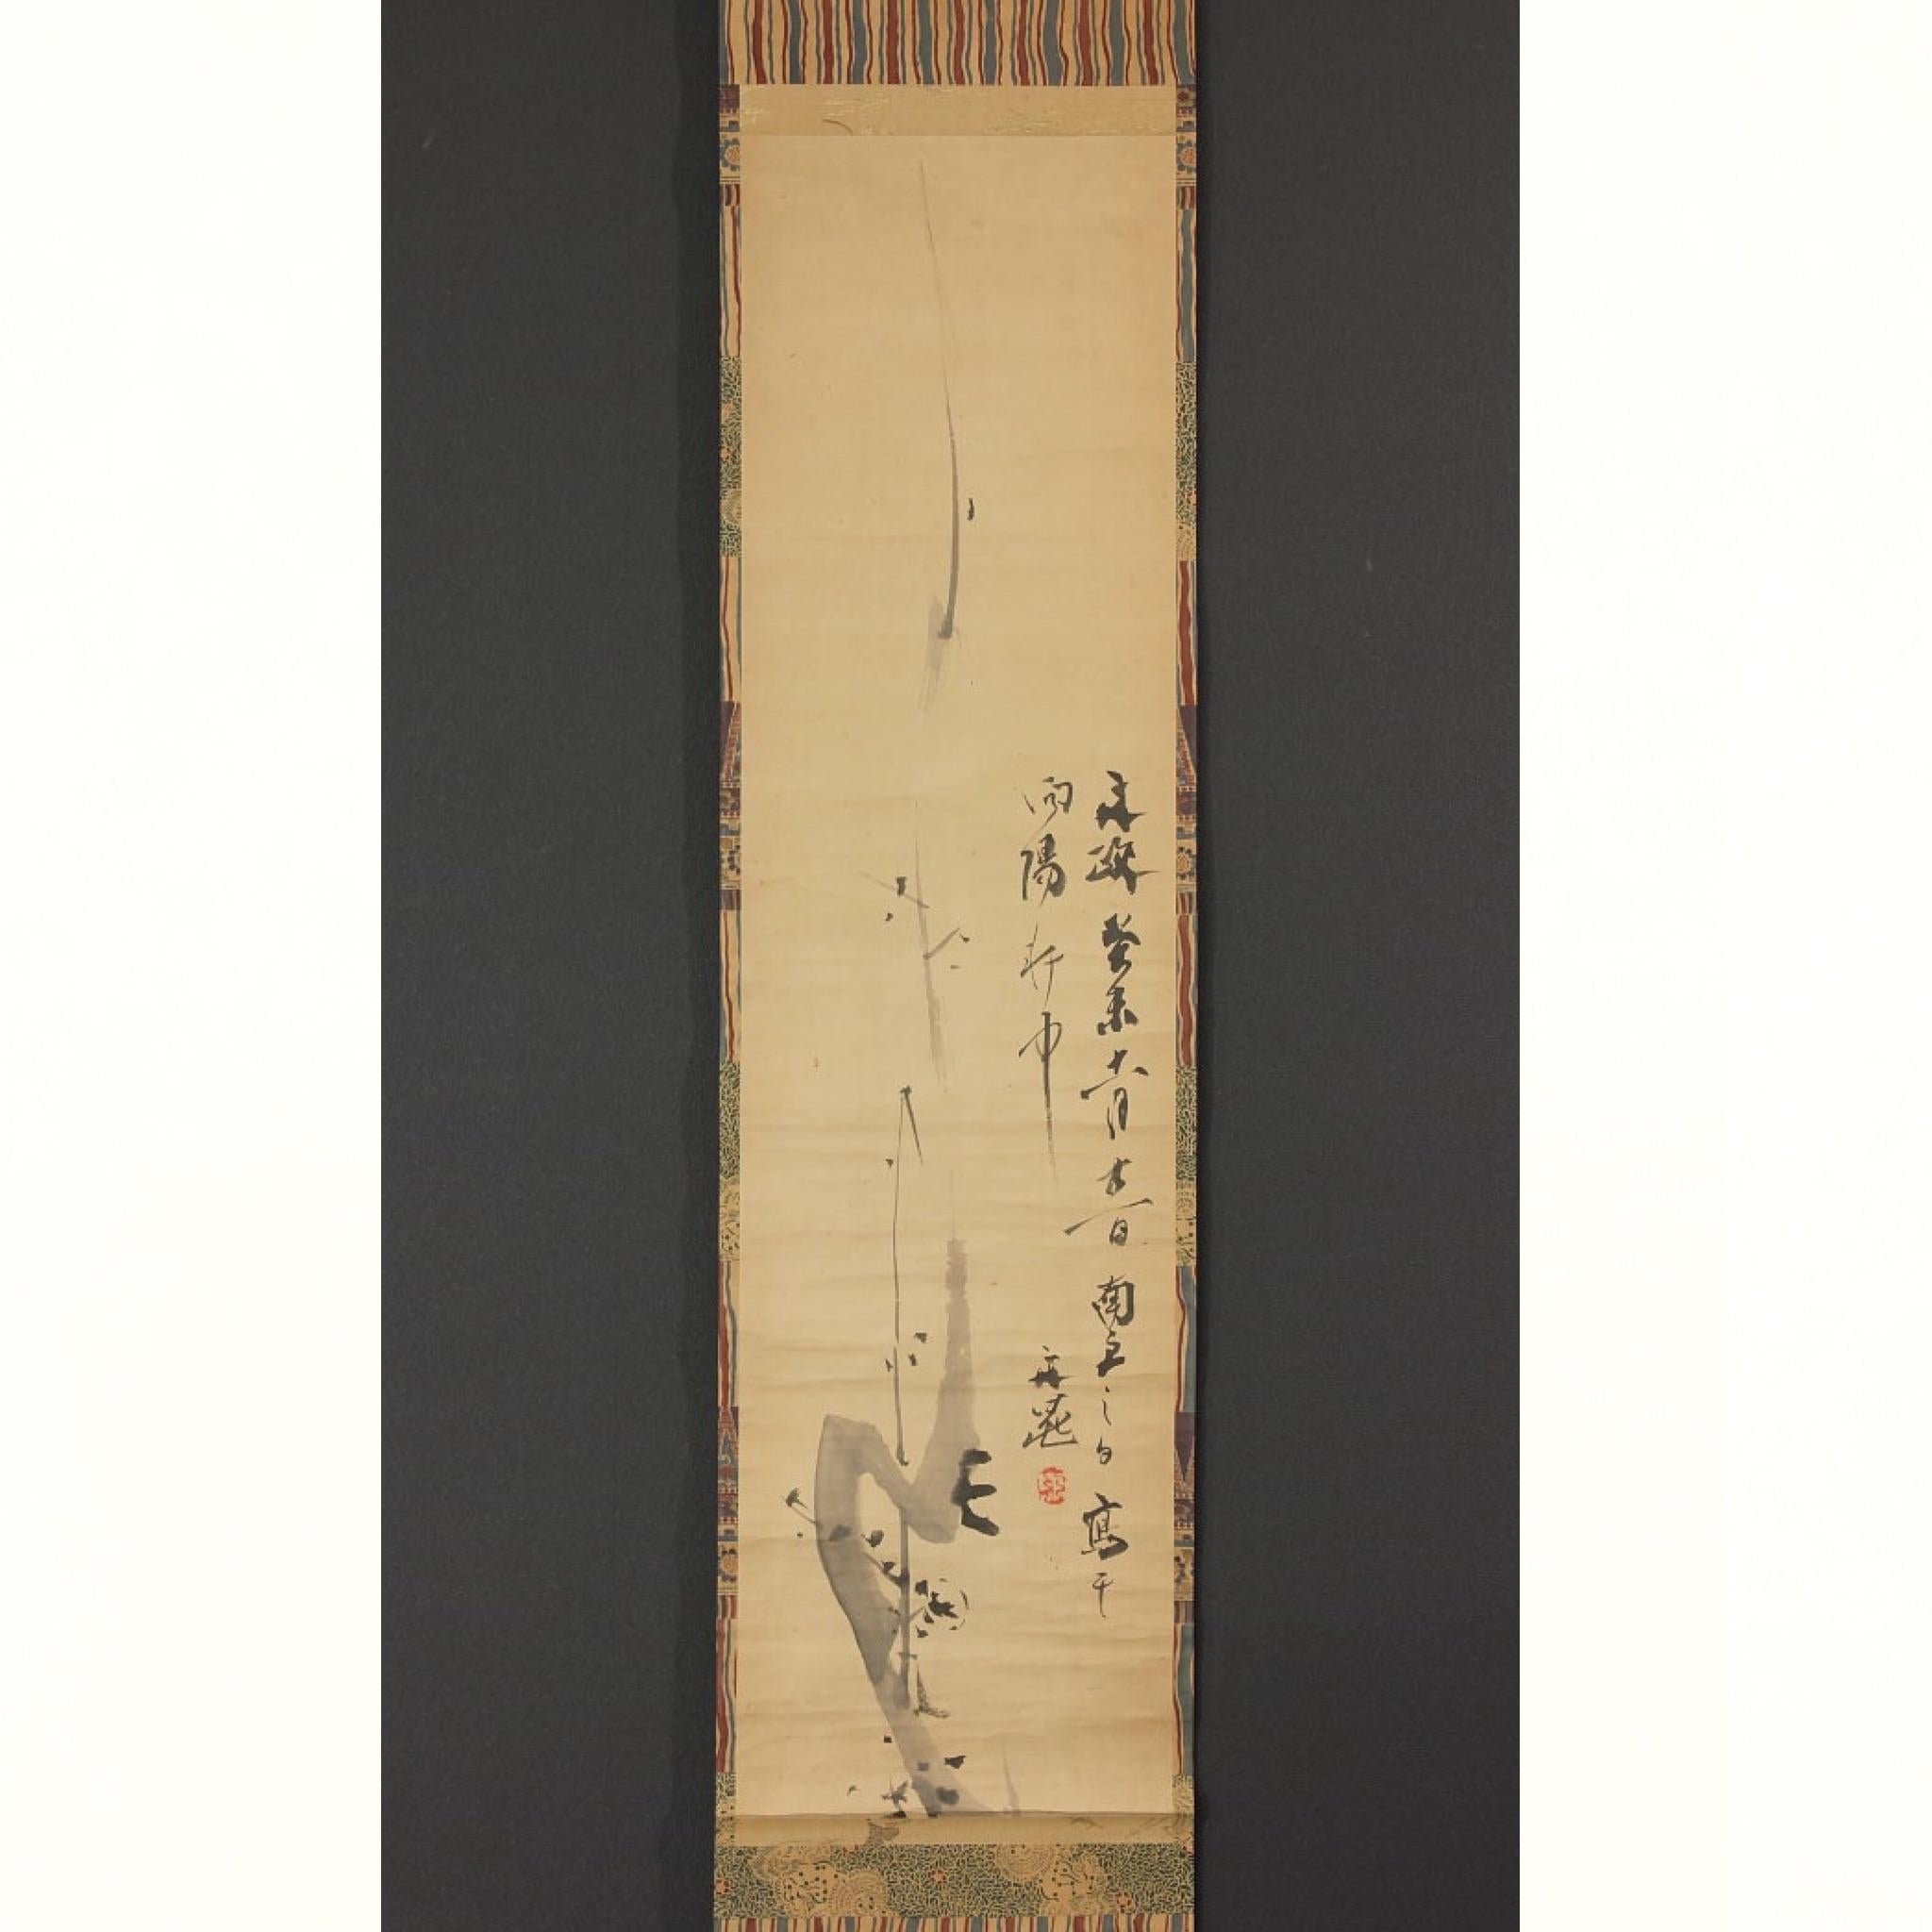 Peinture à l'encre japonaise sur papier représentant des fleurs de prunier et un poème, montage au rouleau, signature  & sceau unique : Tani Buncho (1763 - 1840). Peintre et poète lettré (bunjin) célèbre et prolifique, qui s'est principalement